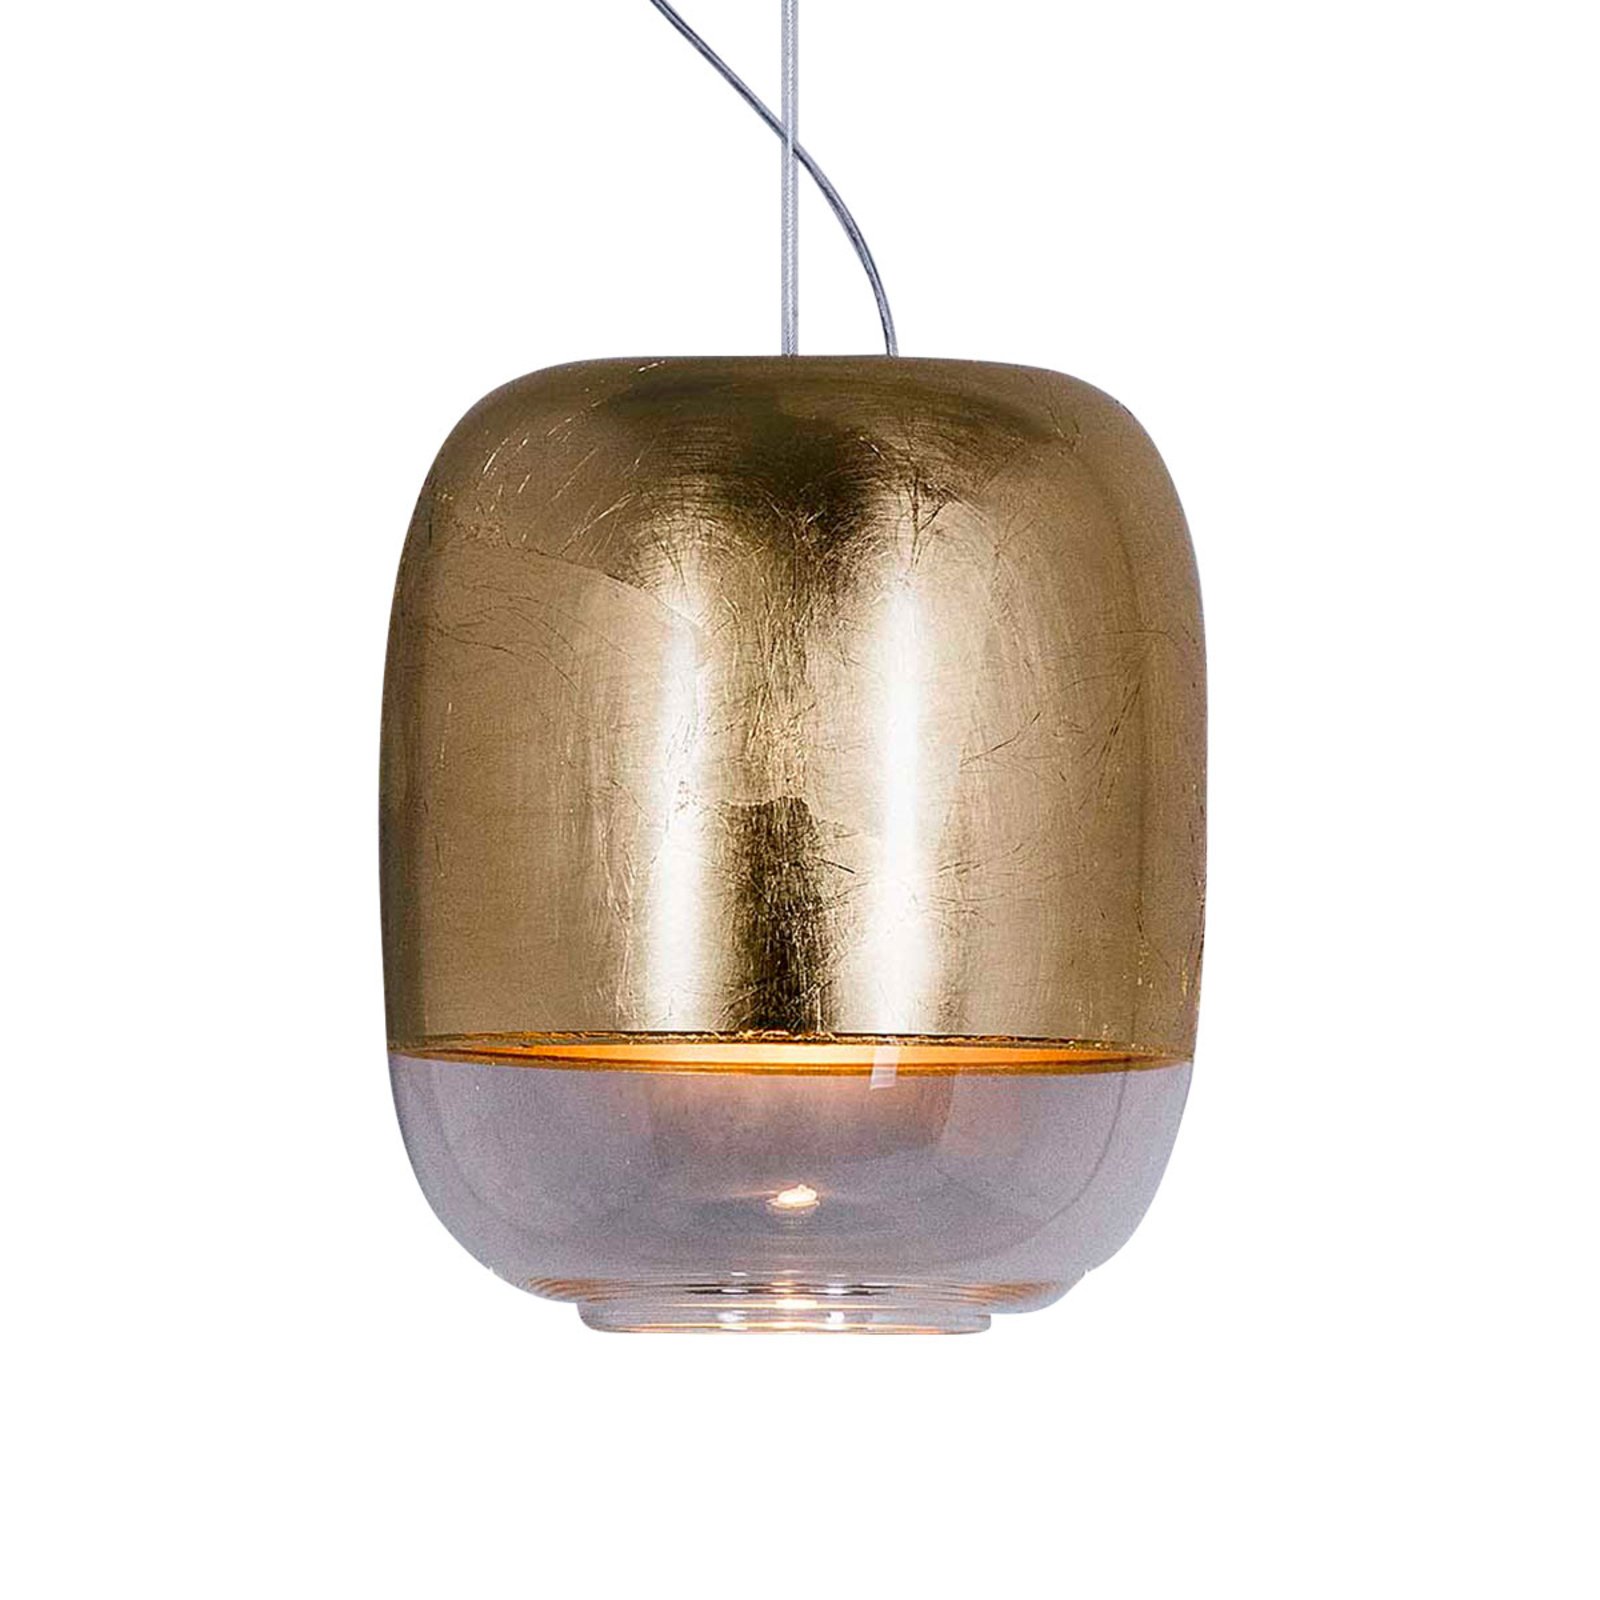 Prandina Gong S1 lampada sospensione, oro